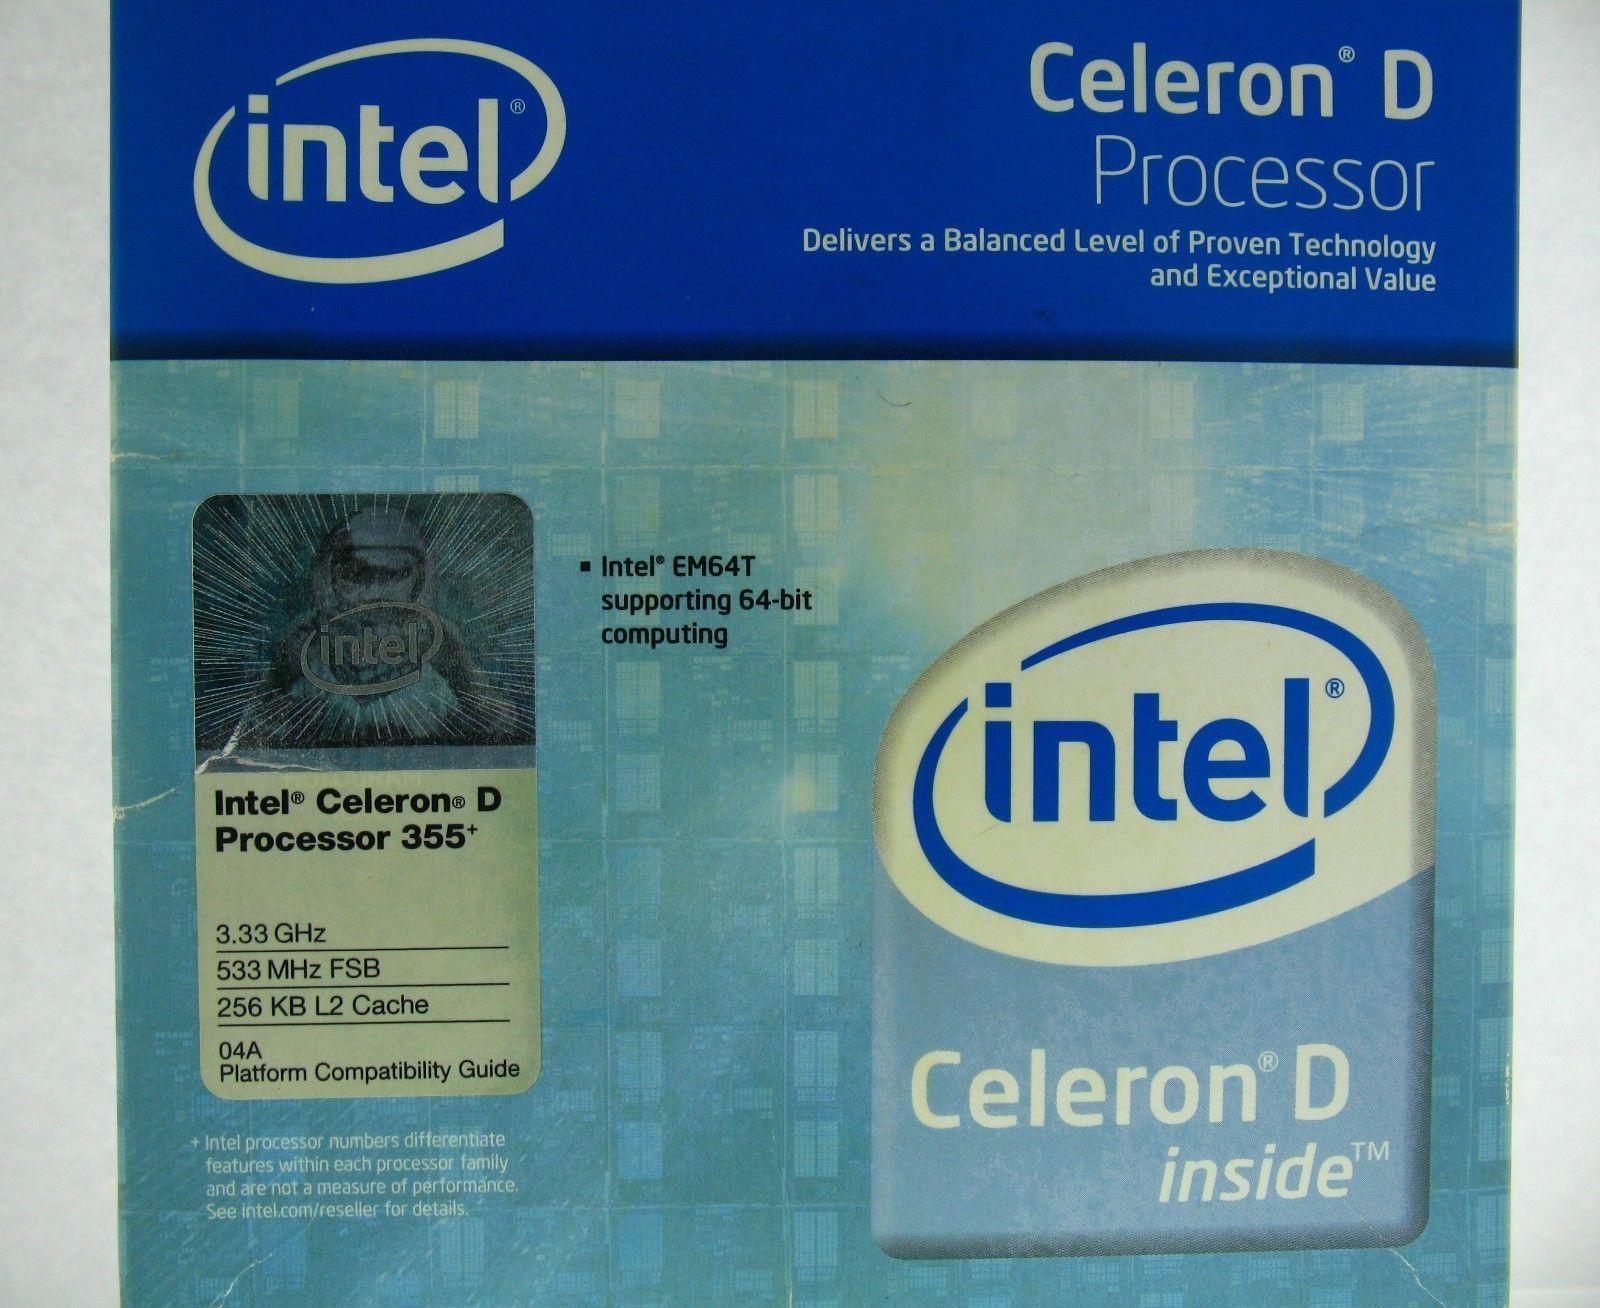 Celeron D Logo - Intel Celeron D 355, 3.33 GHz 256 KB 533 MHZ (BX80547RE3330CN) Boxed ...